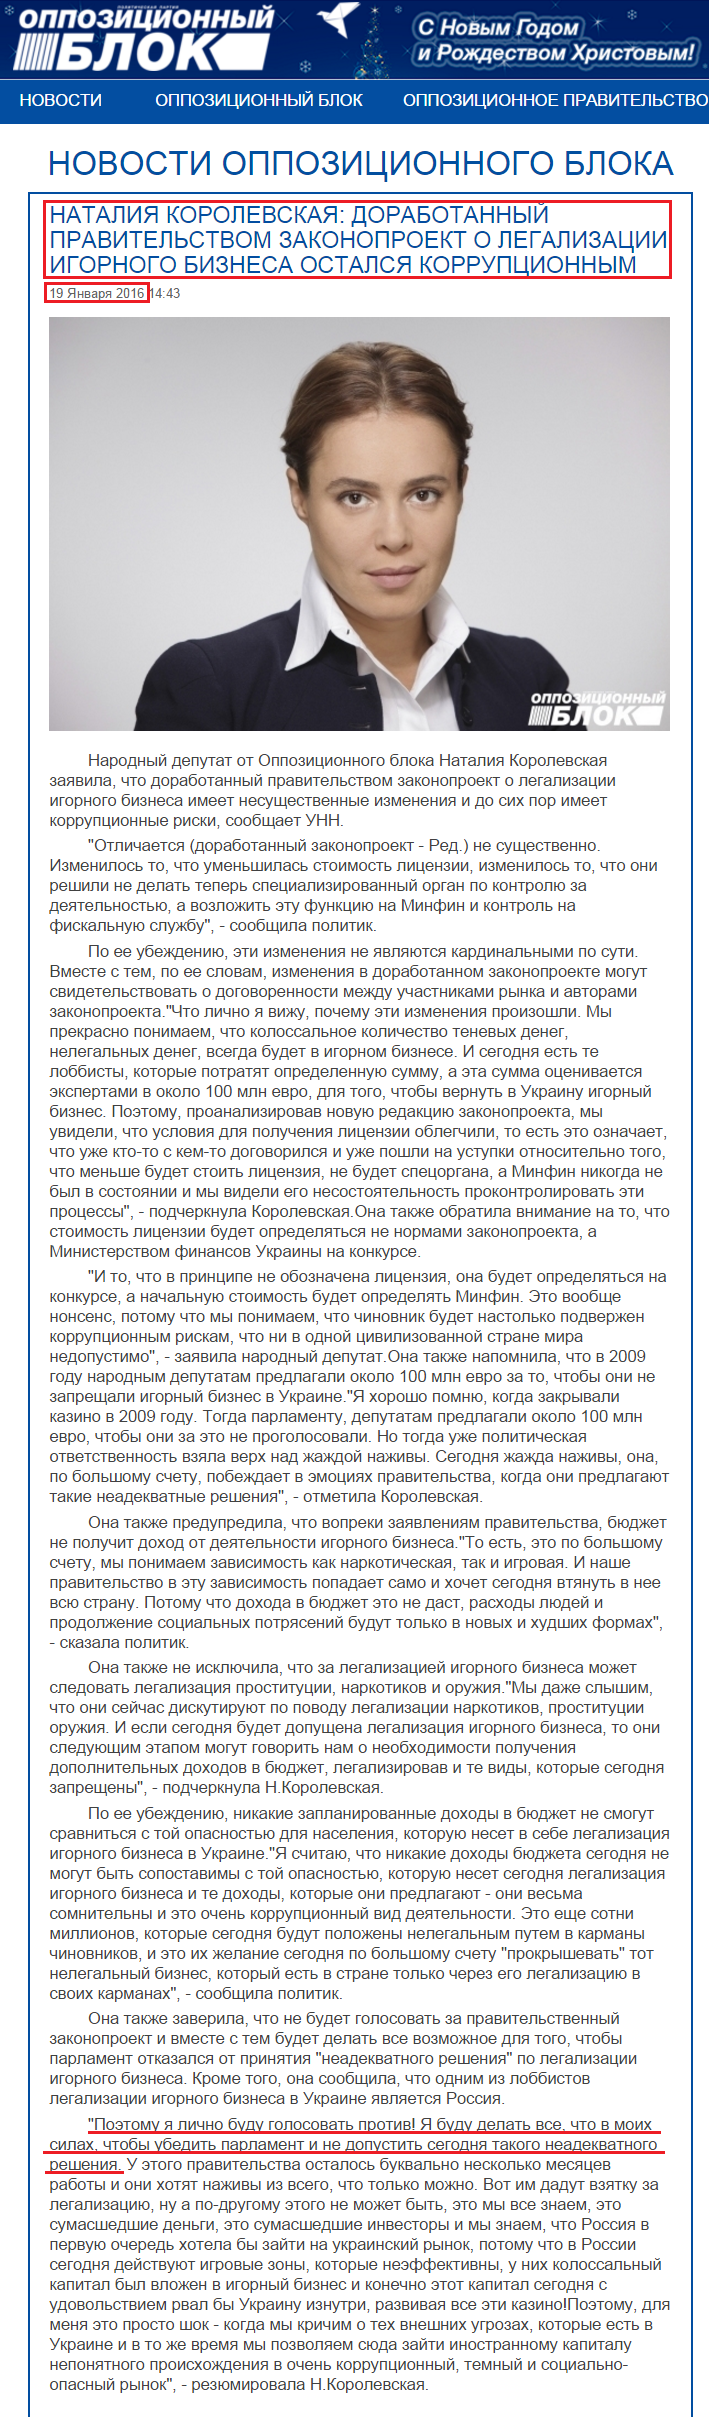 http://opposition.org.ua/news/nataliya-korolevska-doopracovanij-uryadom-zakonoproekt-pro-legalizaciyu-gralnogo-biznesu-zalishivsya-korupcijnim.html